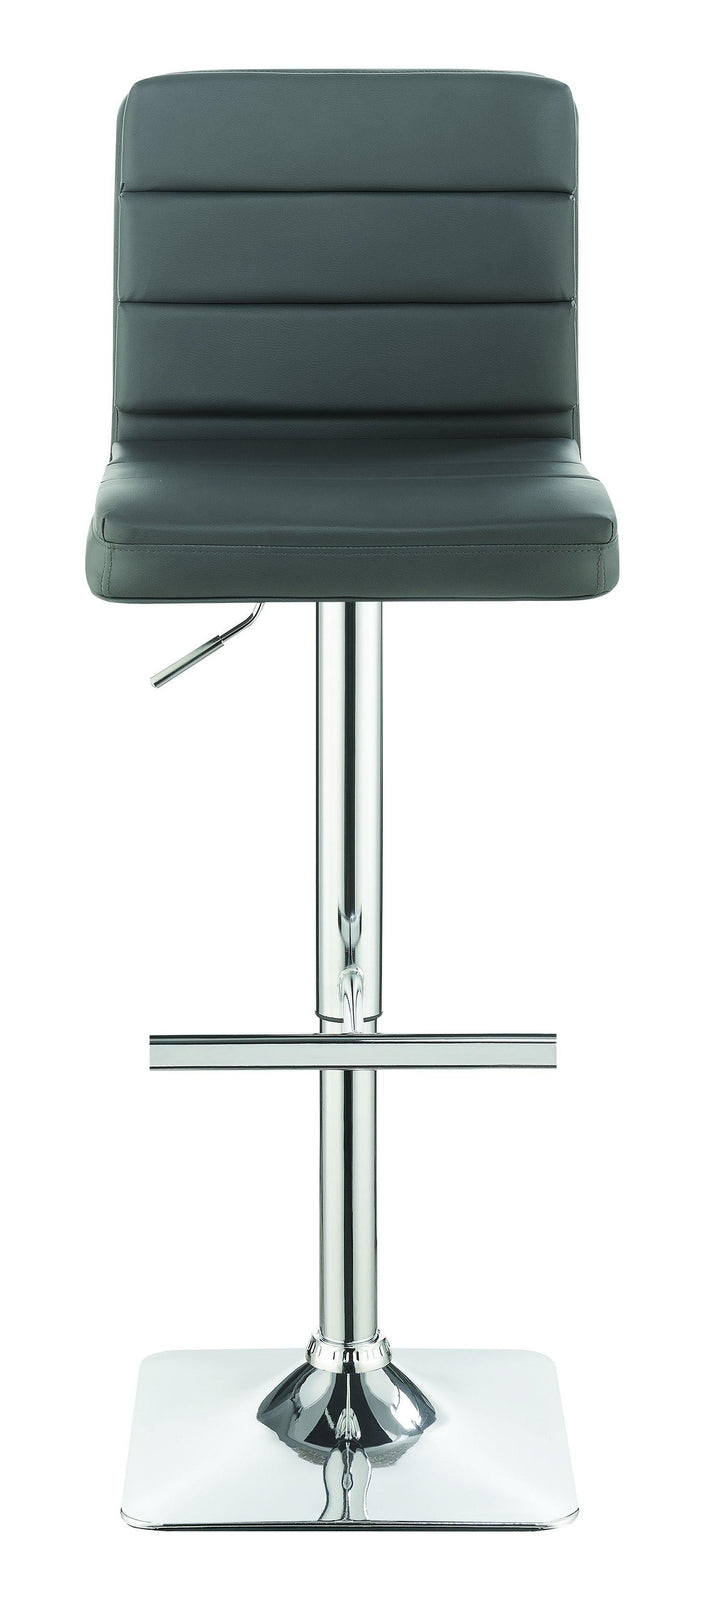 Rec room/ bar tables: chrome/glass 120696 Grey Contemporary adjustable bar stool By coaster - sofafair.com